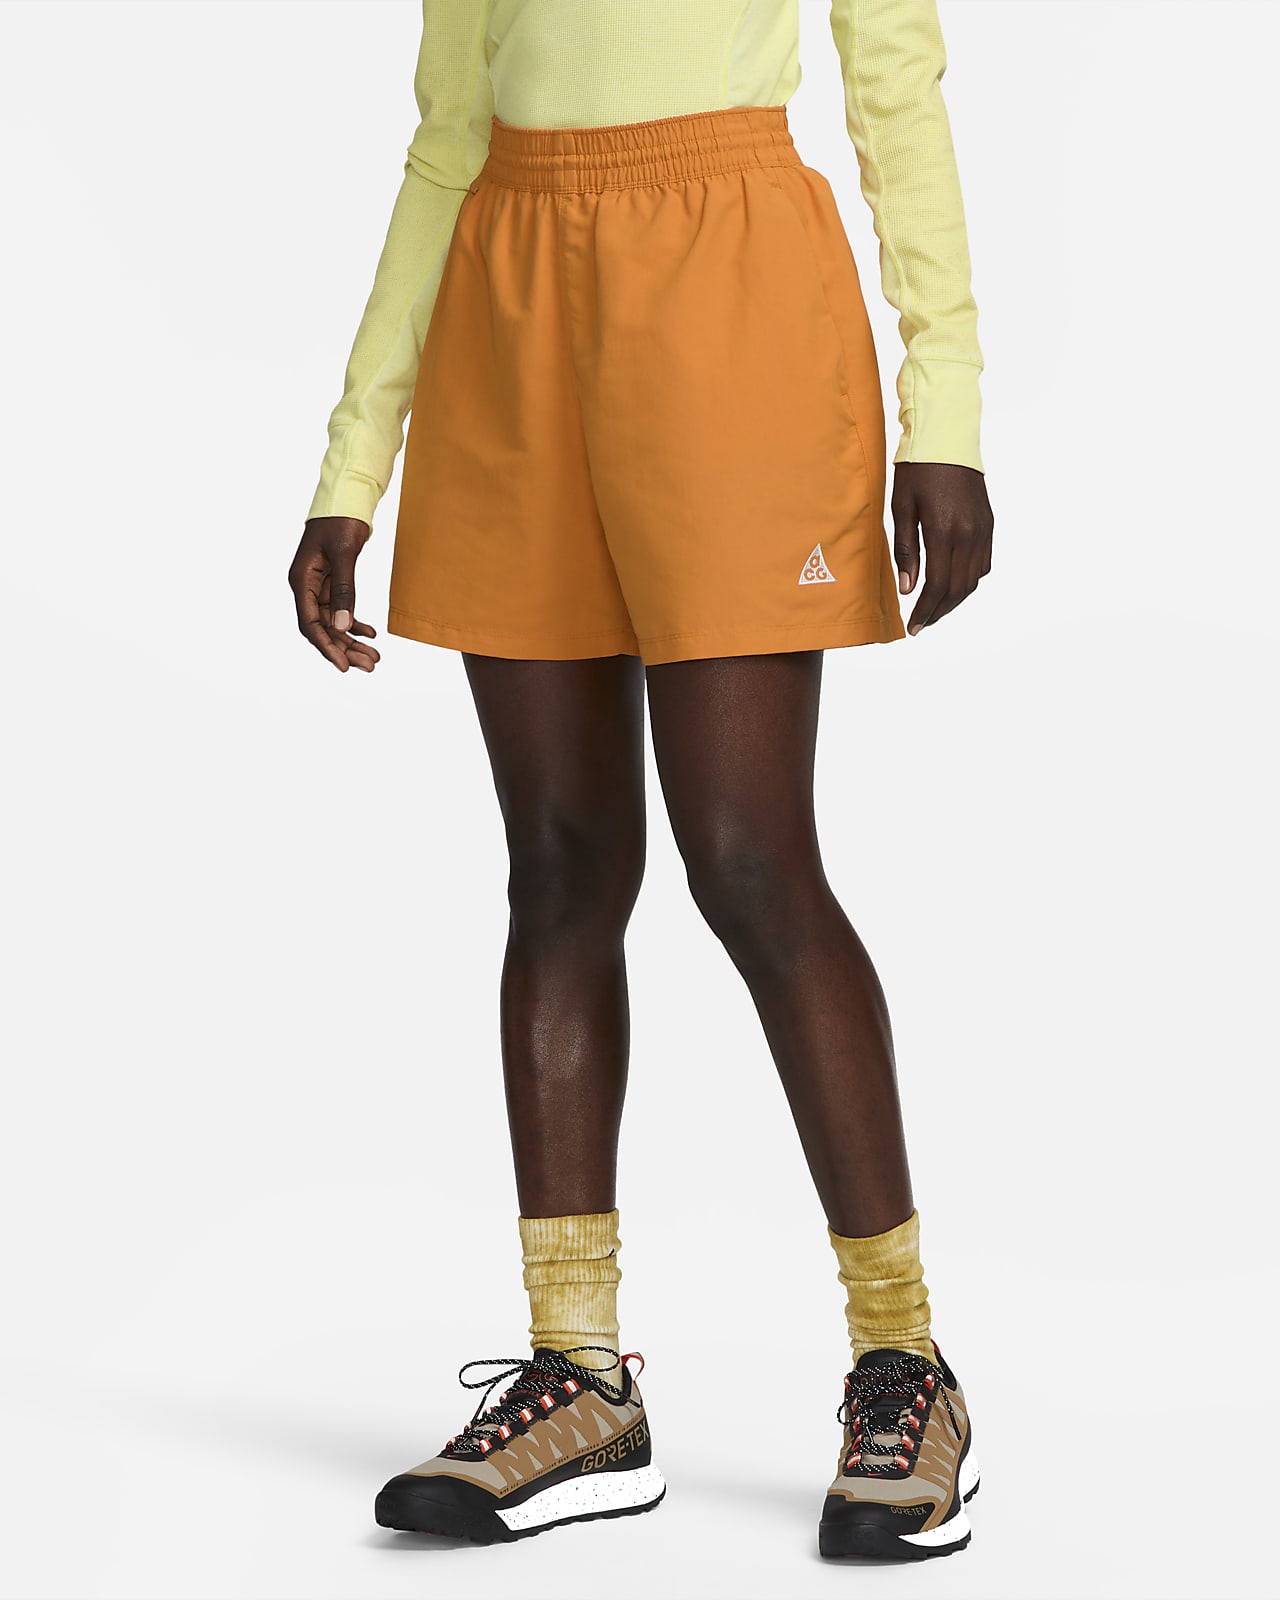 Nike ACG Women's 5" Shorts